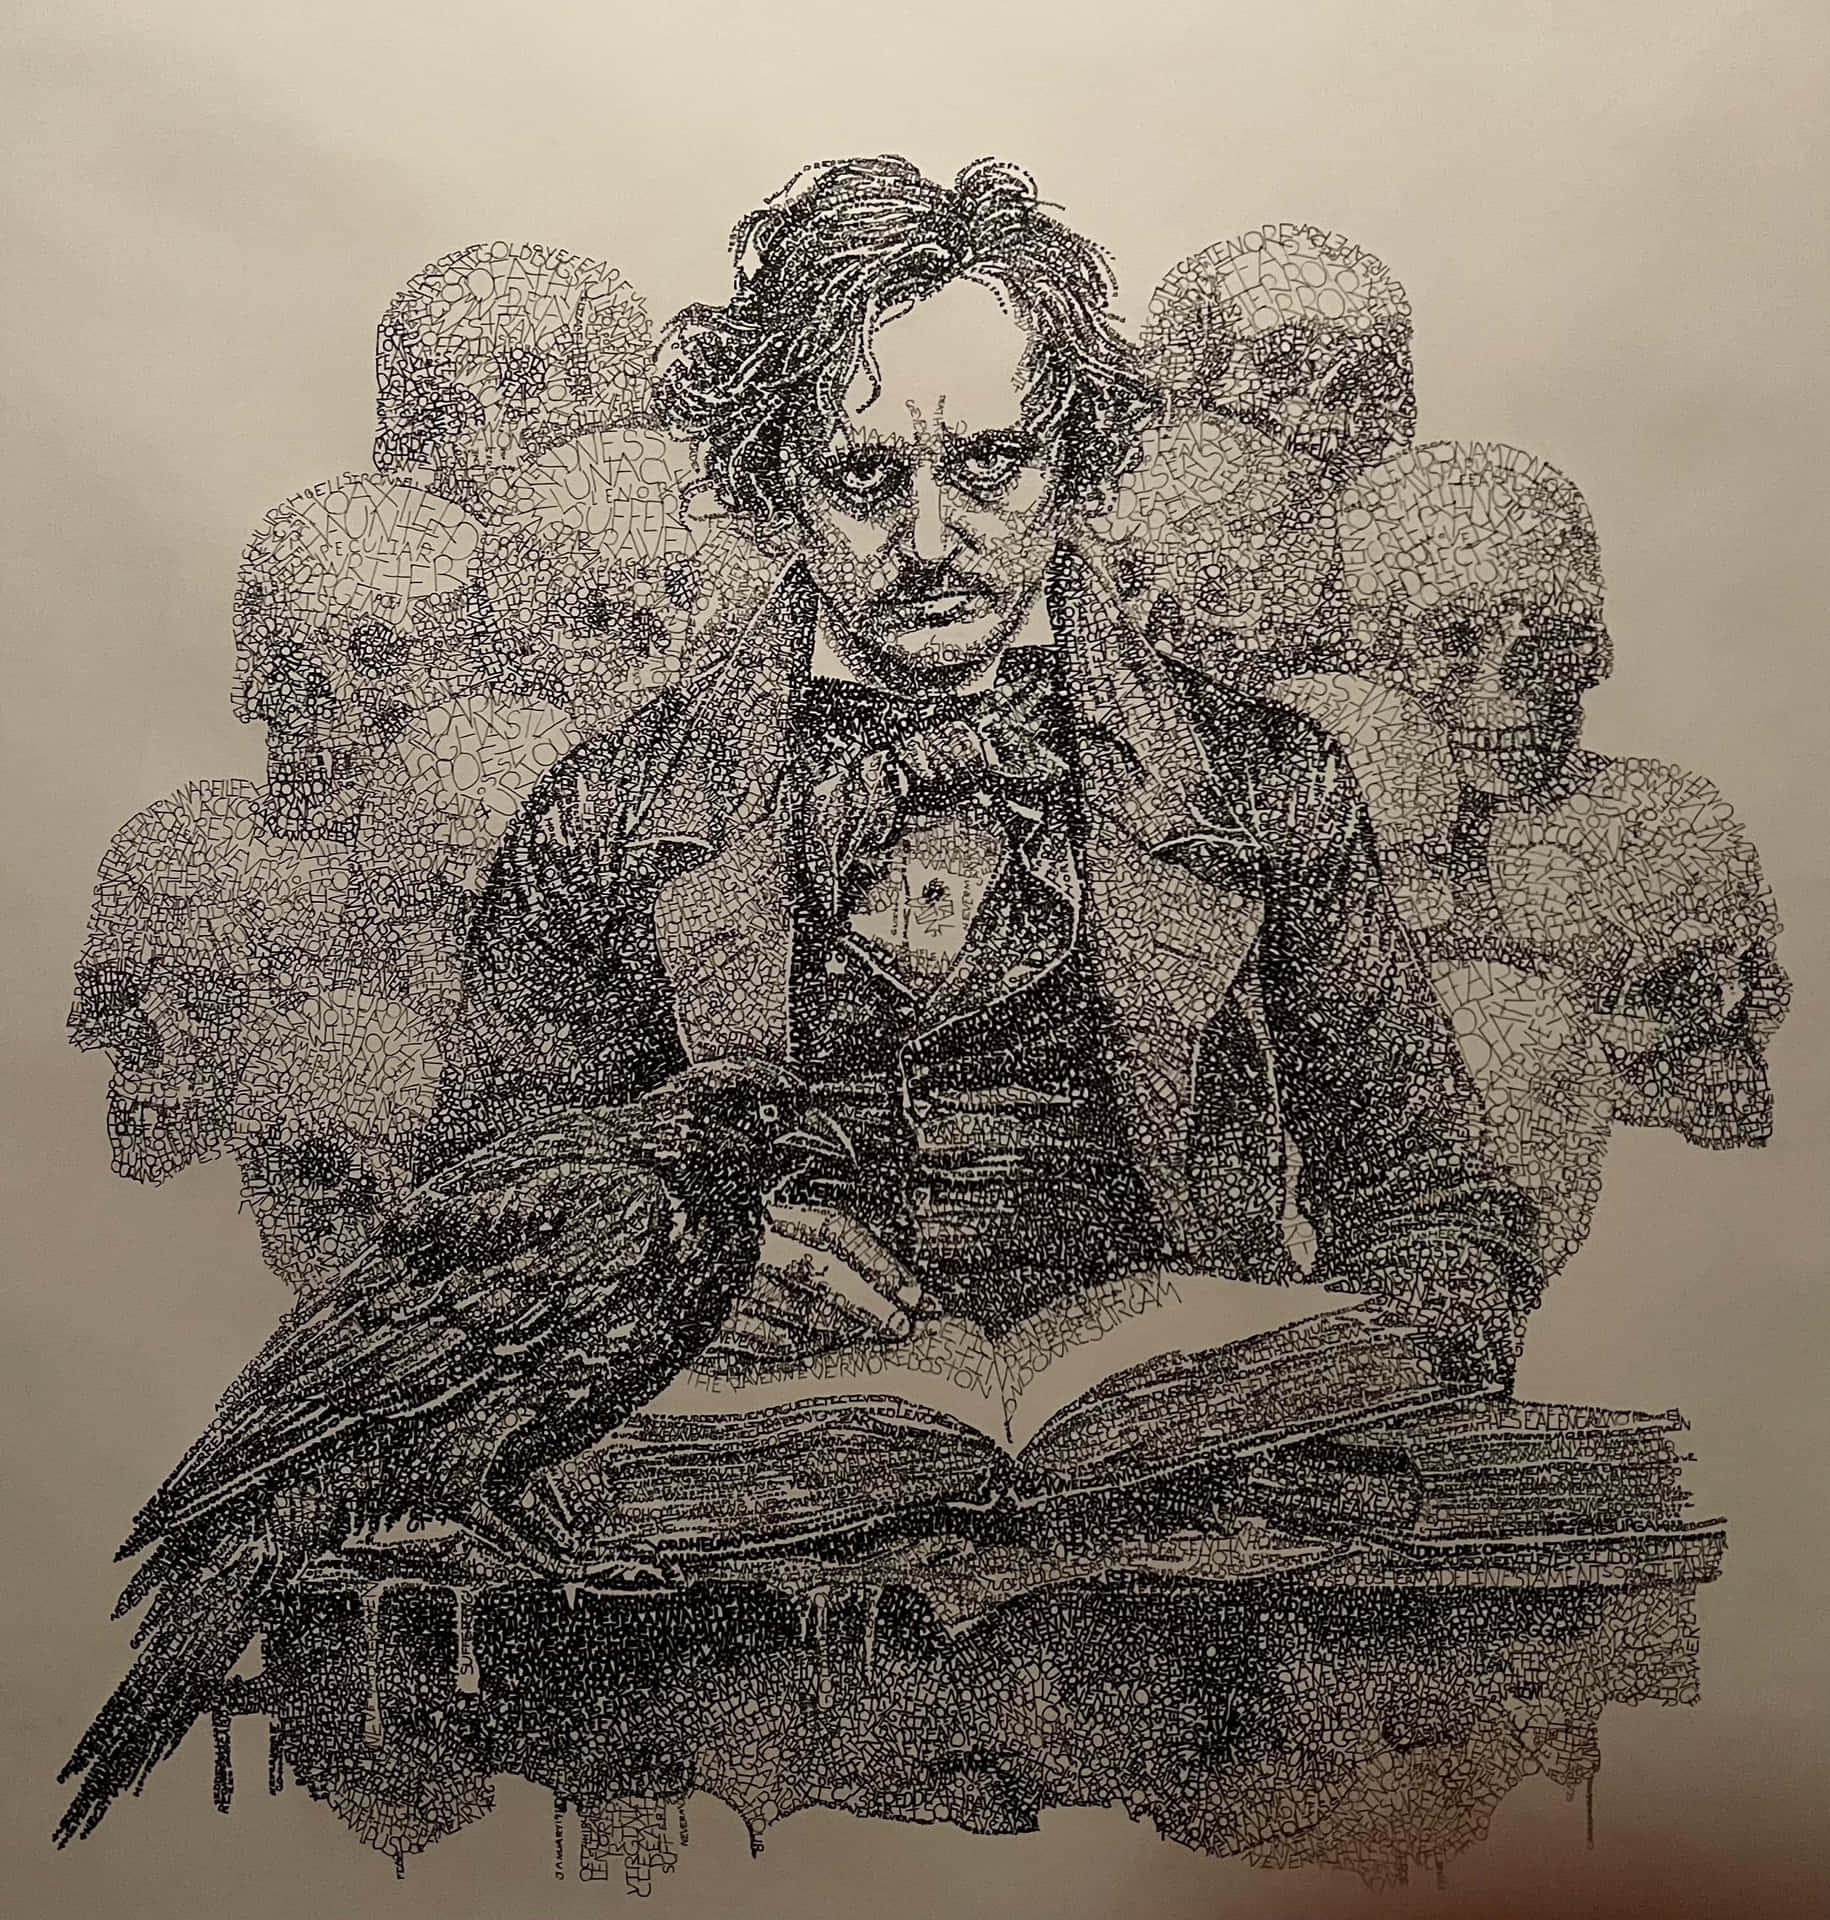 Edgar Allan Poe Raven Skulls Artwork Background